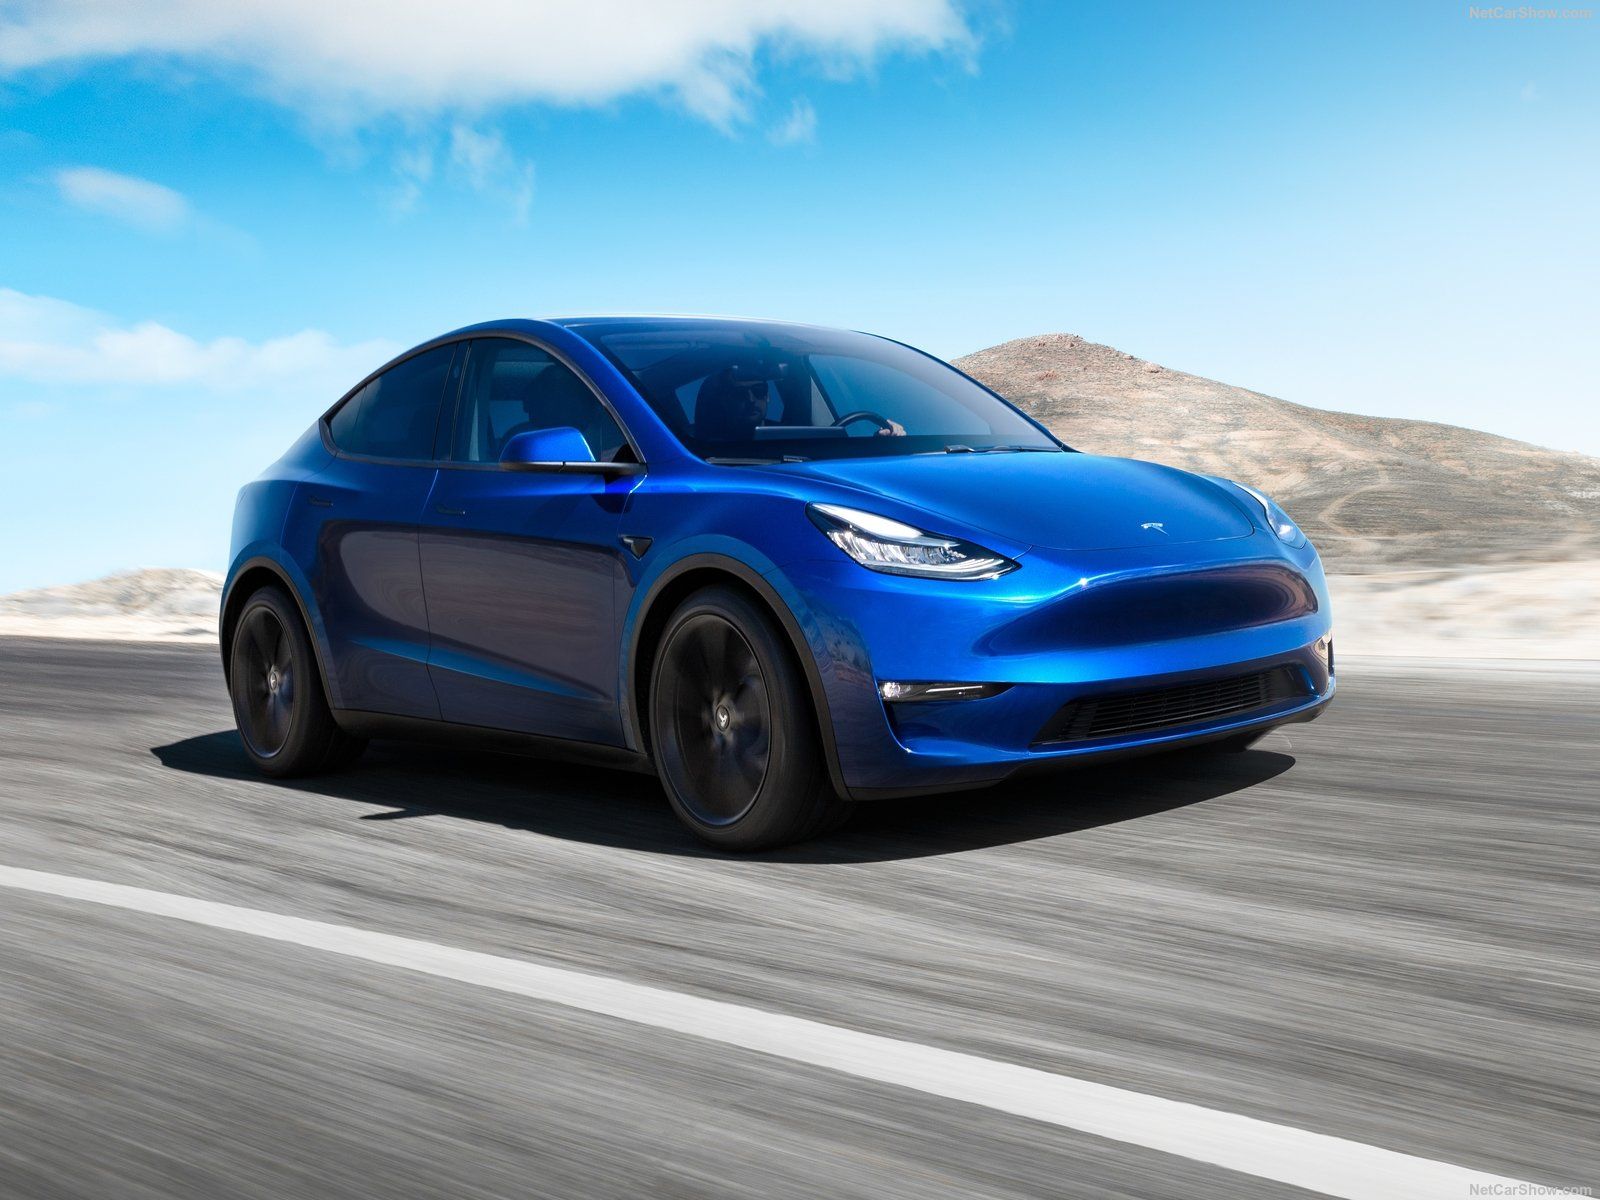 S dojazdom 540 km nová Tesla Model Y kraľuje medzi elektrickými SUV, v Európe ju však tak skoro neuvidíš